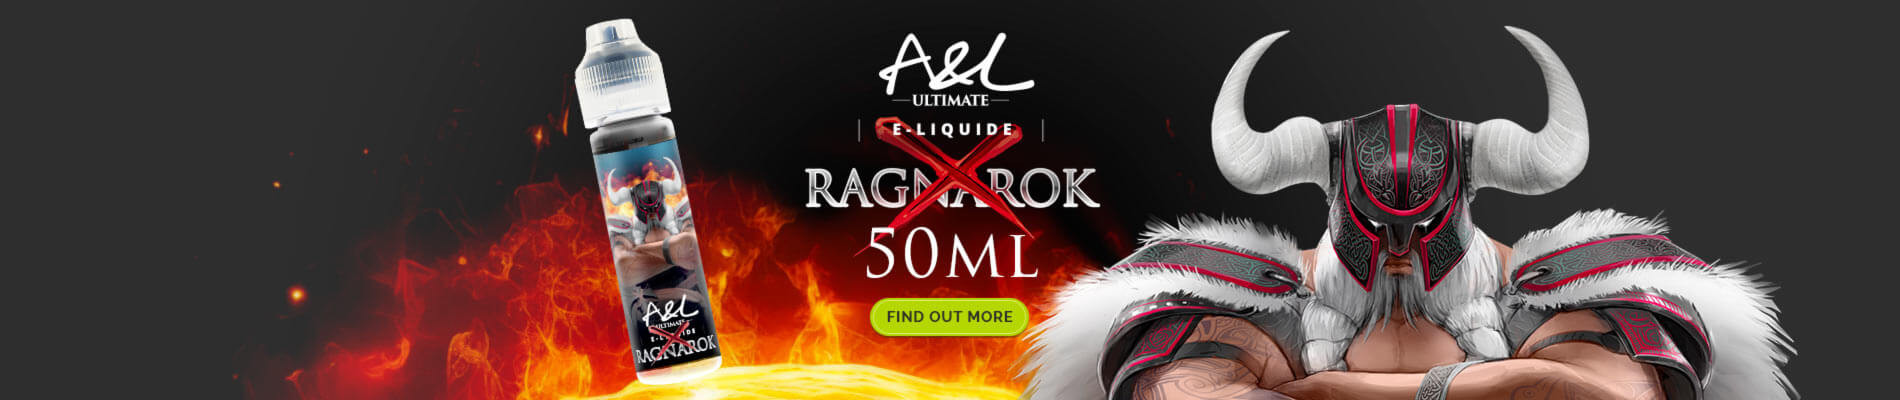 Ragnarok X 50ml A&L Ultimate